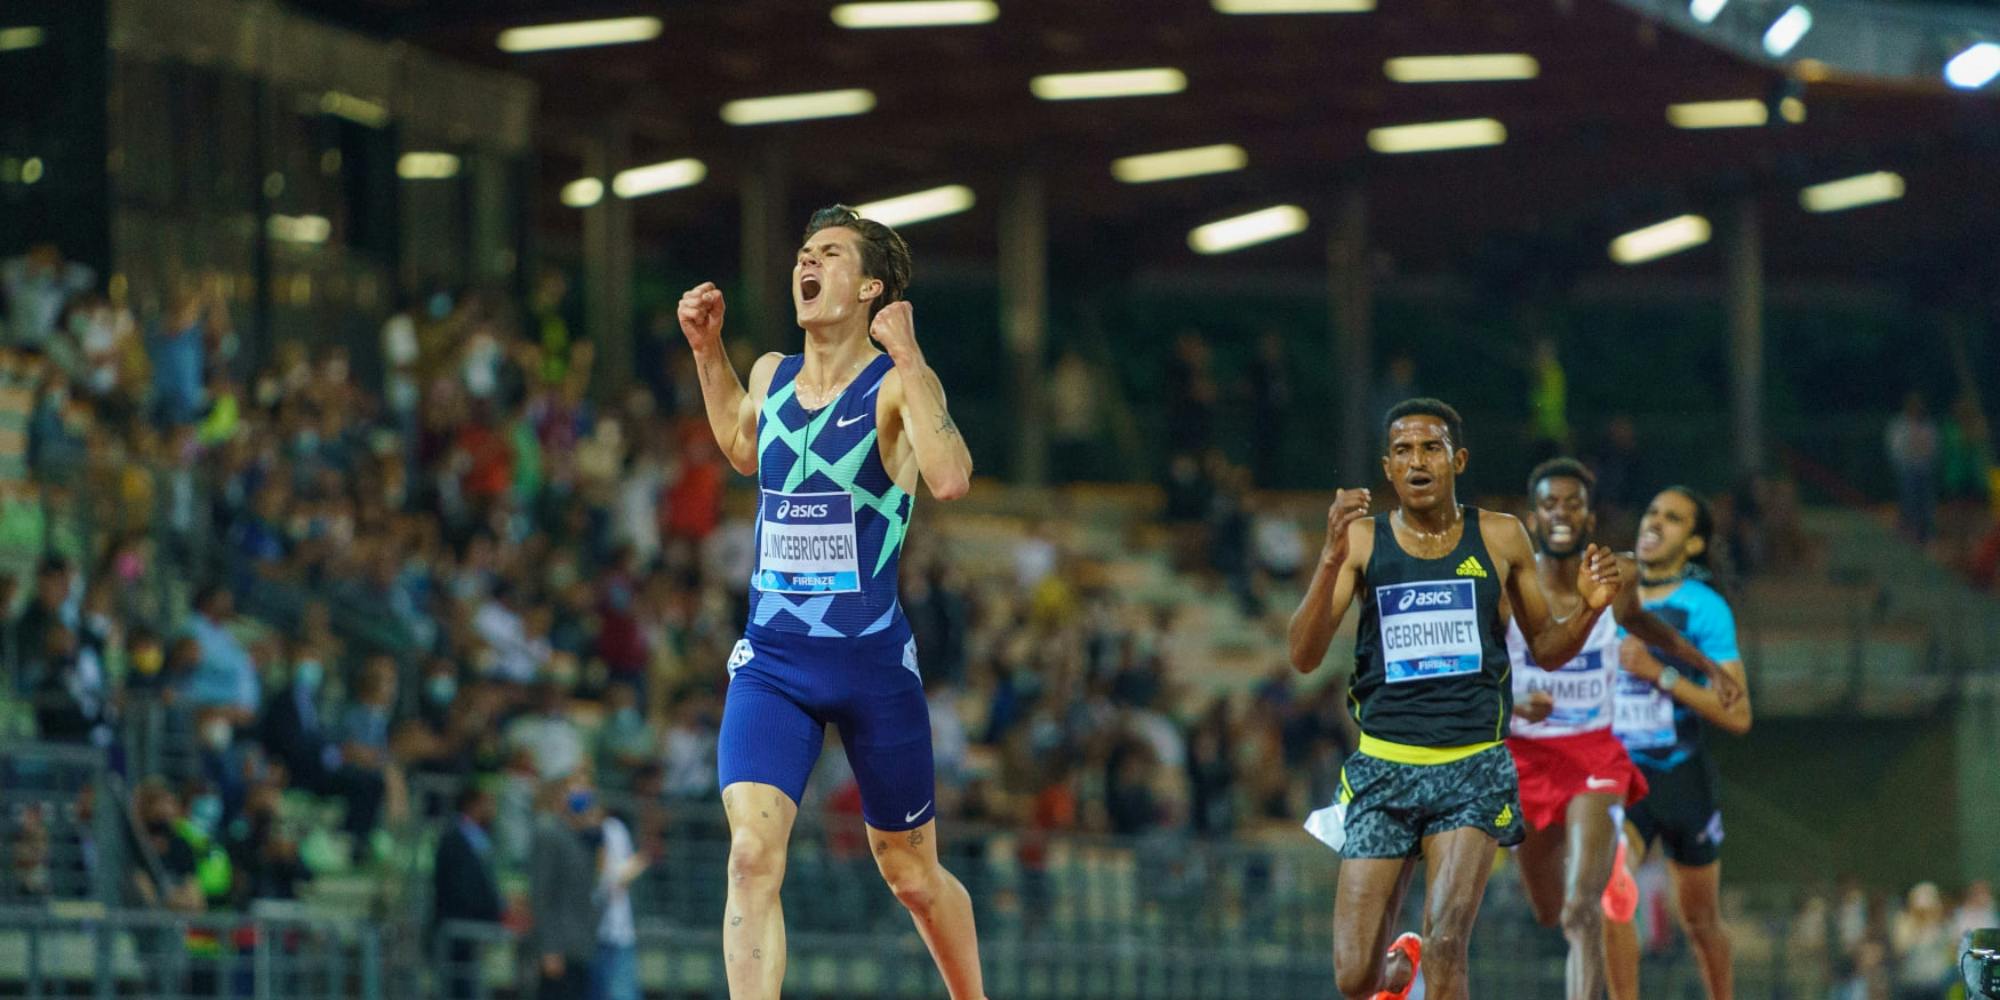 Πανευρωπαϊκό ρεκόρ από τον Jakob Ingebrigtsen με 12:48.45 στα 5.000 μέτρα!